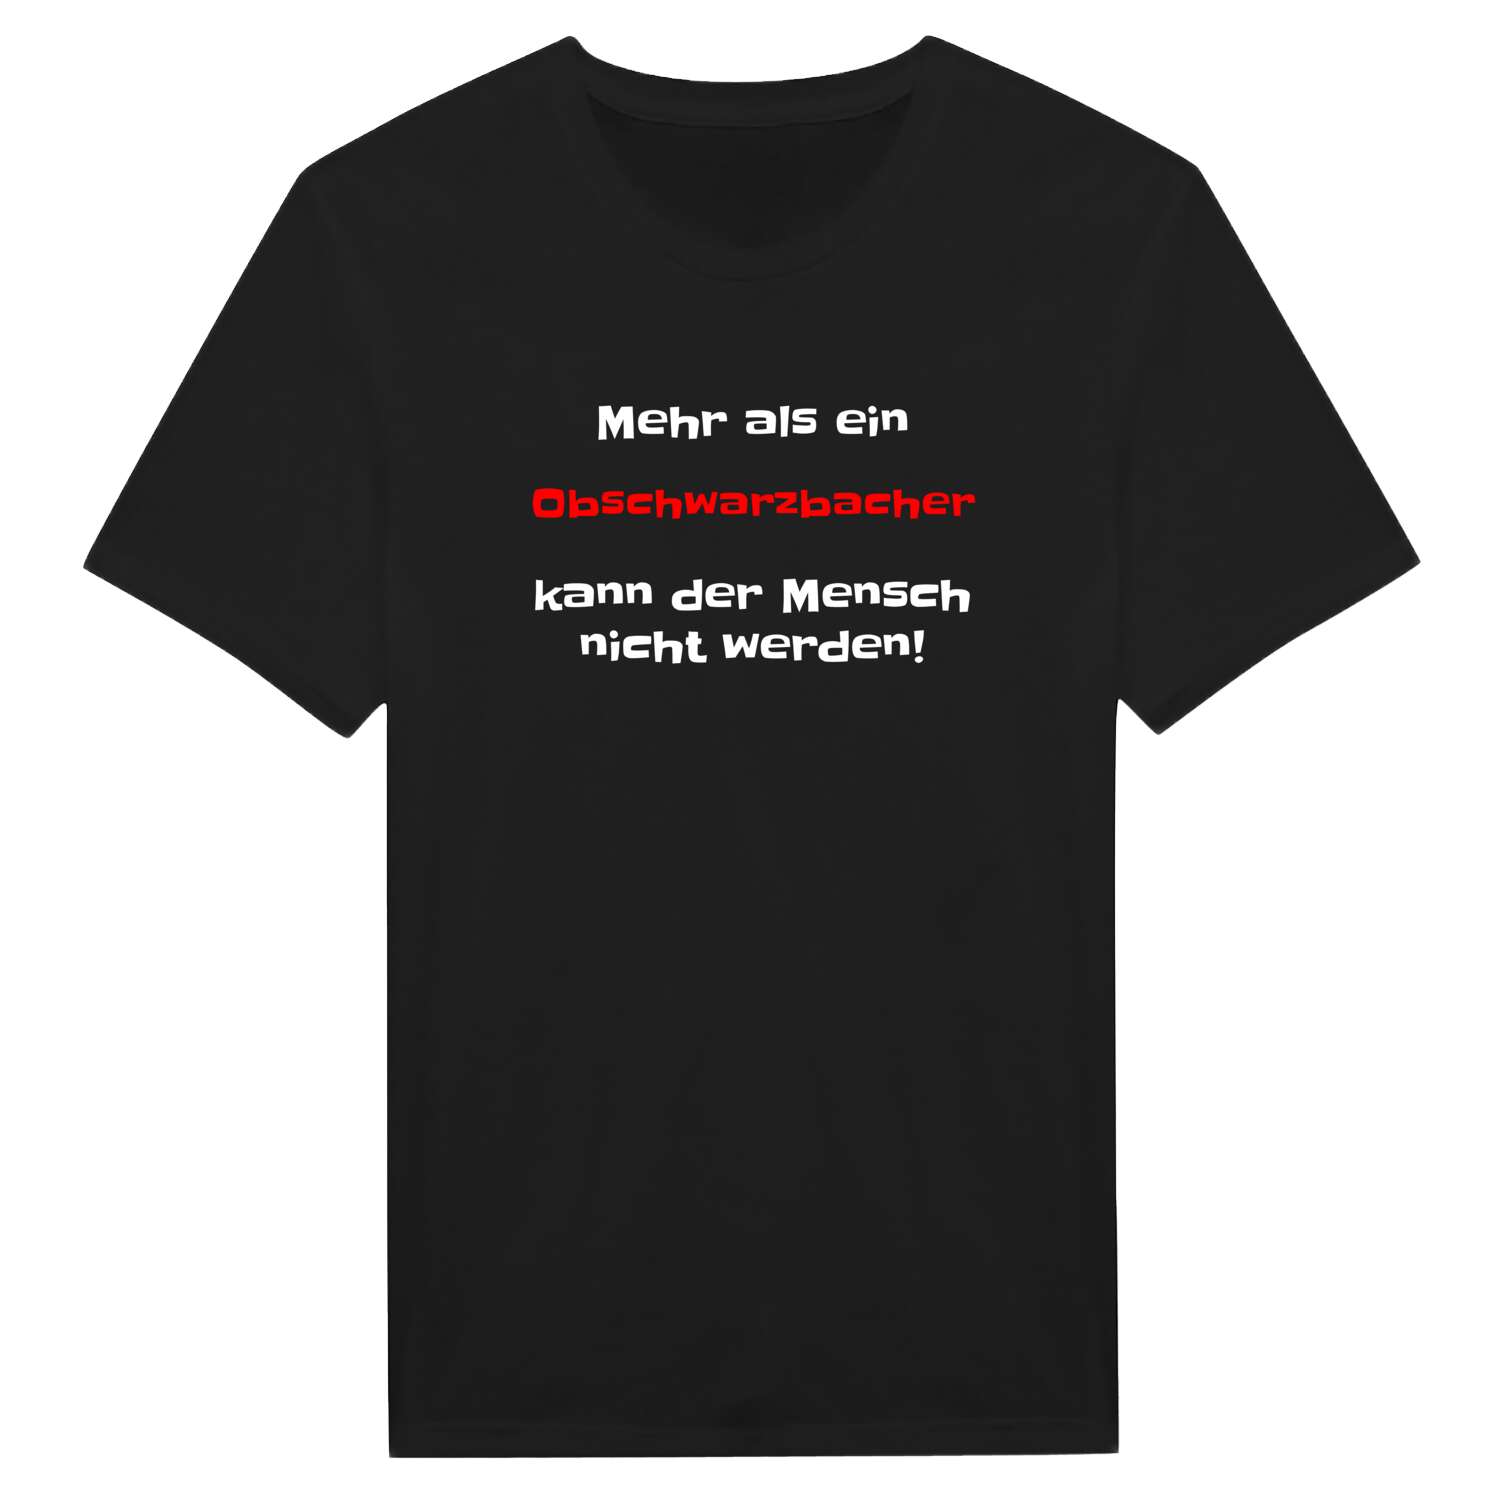 Obschwarzbach T-Shirt »Mehr als ein«